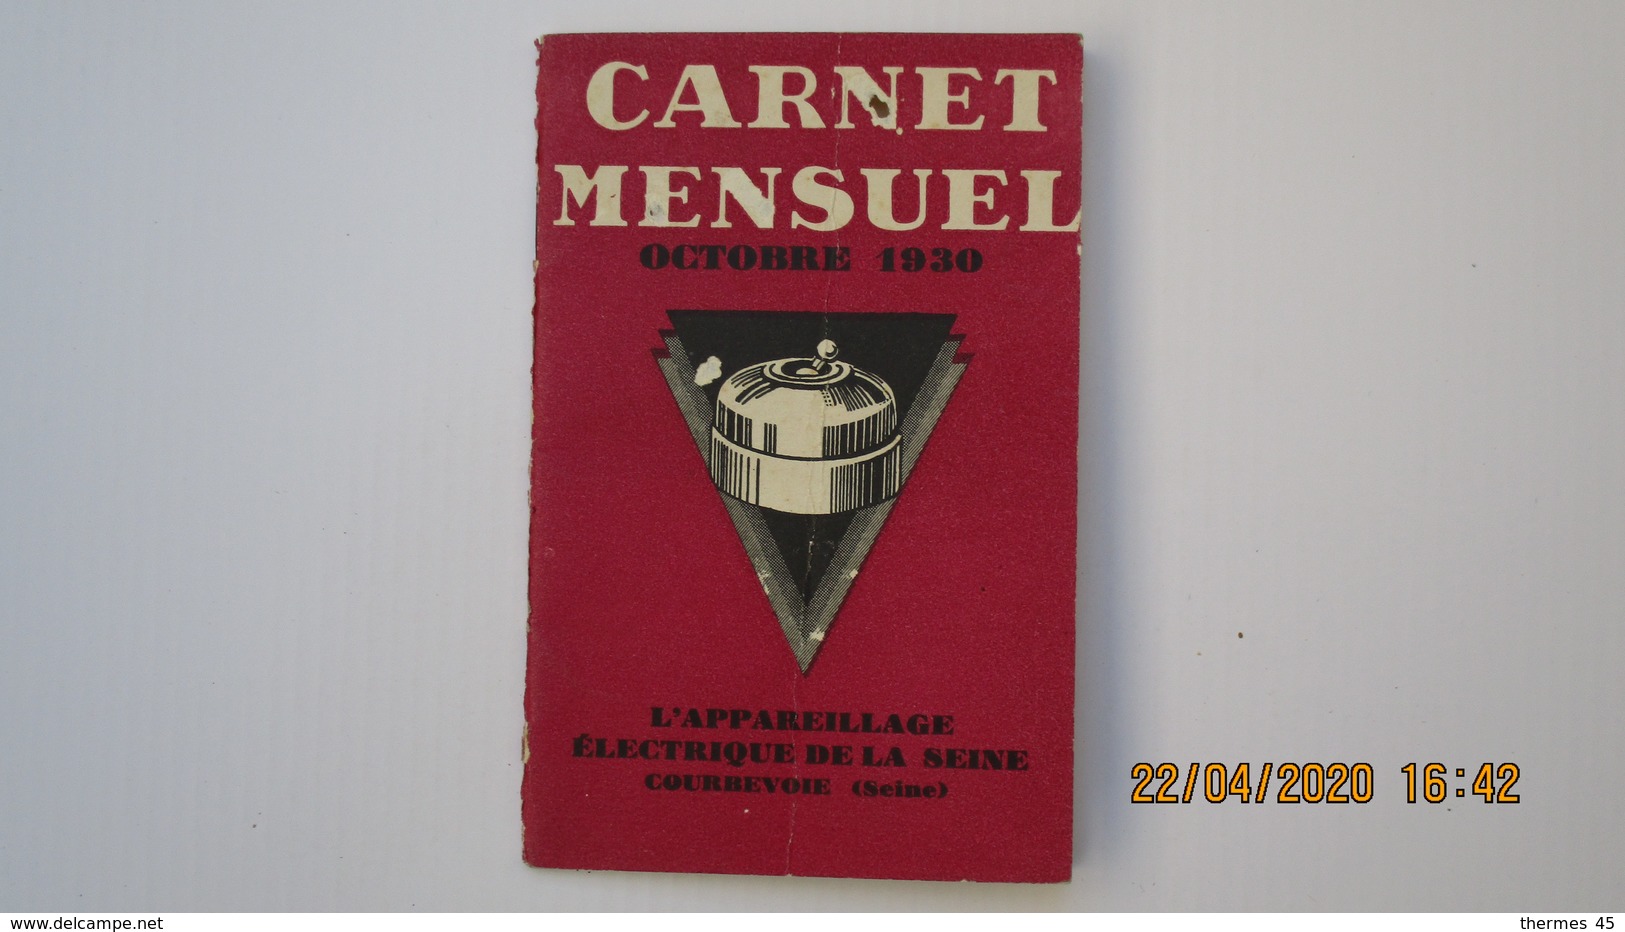 CARNET MENSUEL PUBLICITE DE "L'APPAREILLAGE ELECTRIQUE DE LA SEINE / COURBEVOIE - Other Apparatus